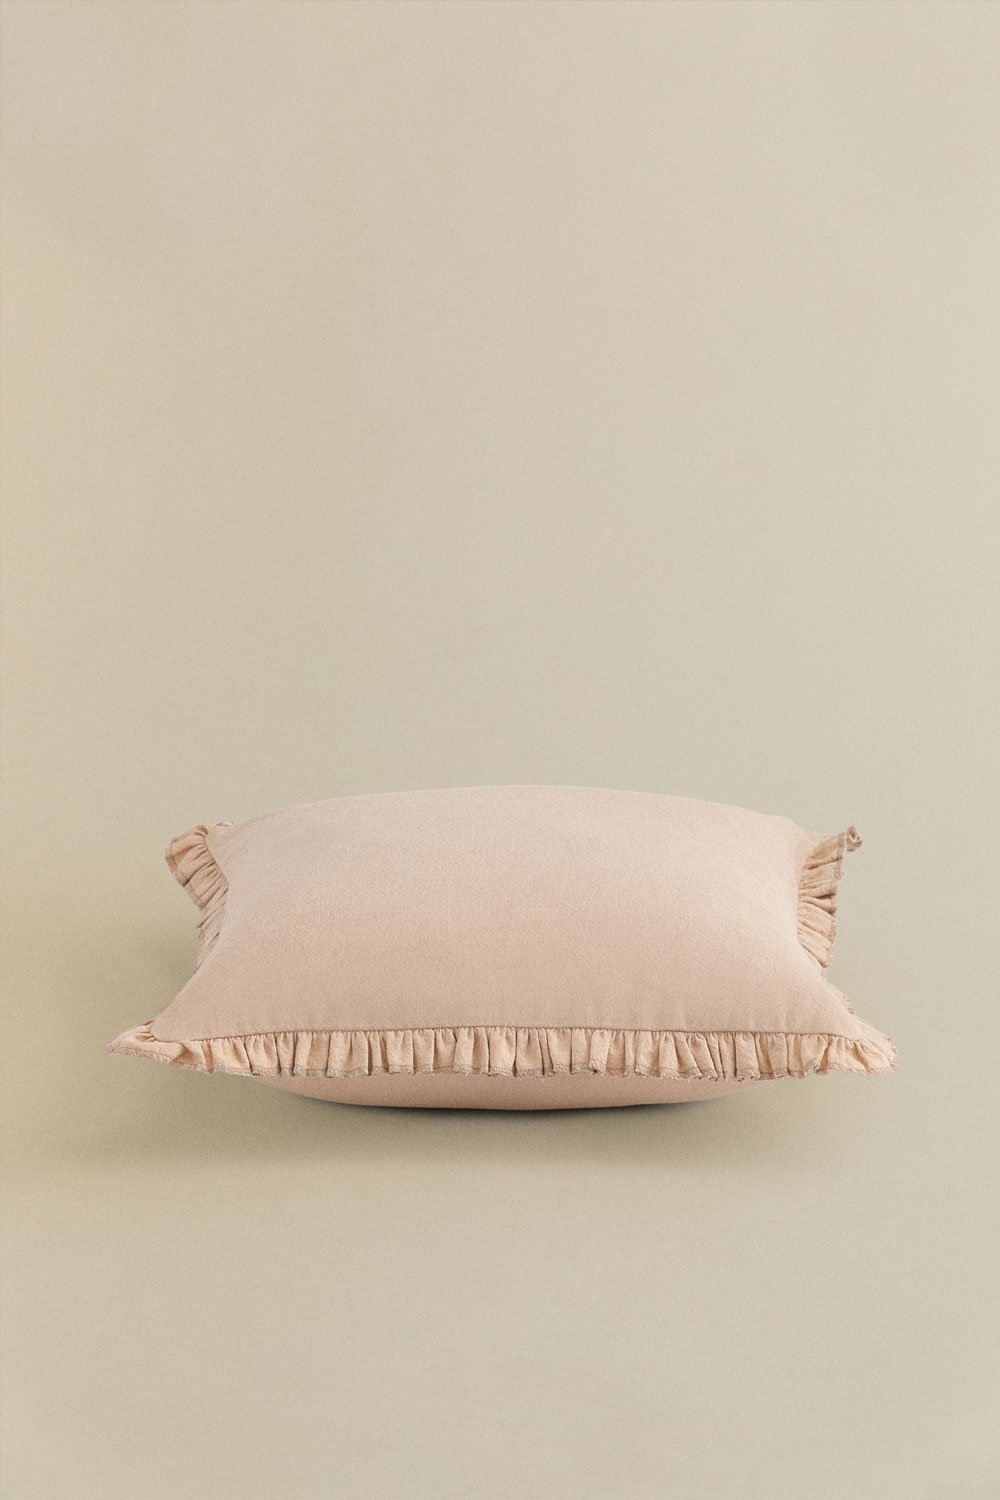 Kwadratowa poduszka z bawełny (40x40 cm) Arassu, obrazek w galerii 2